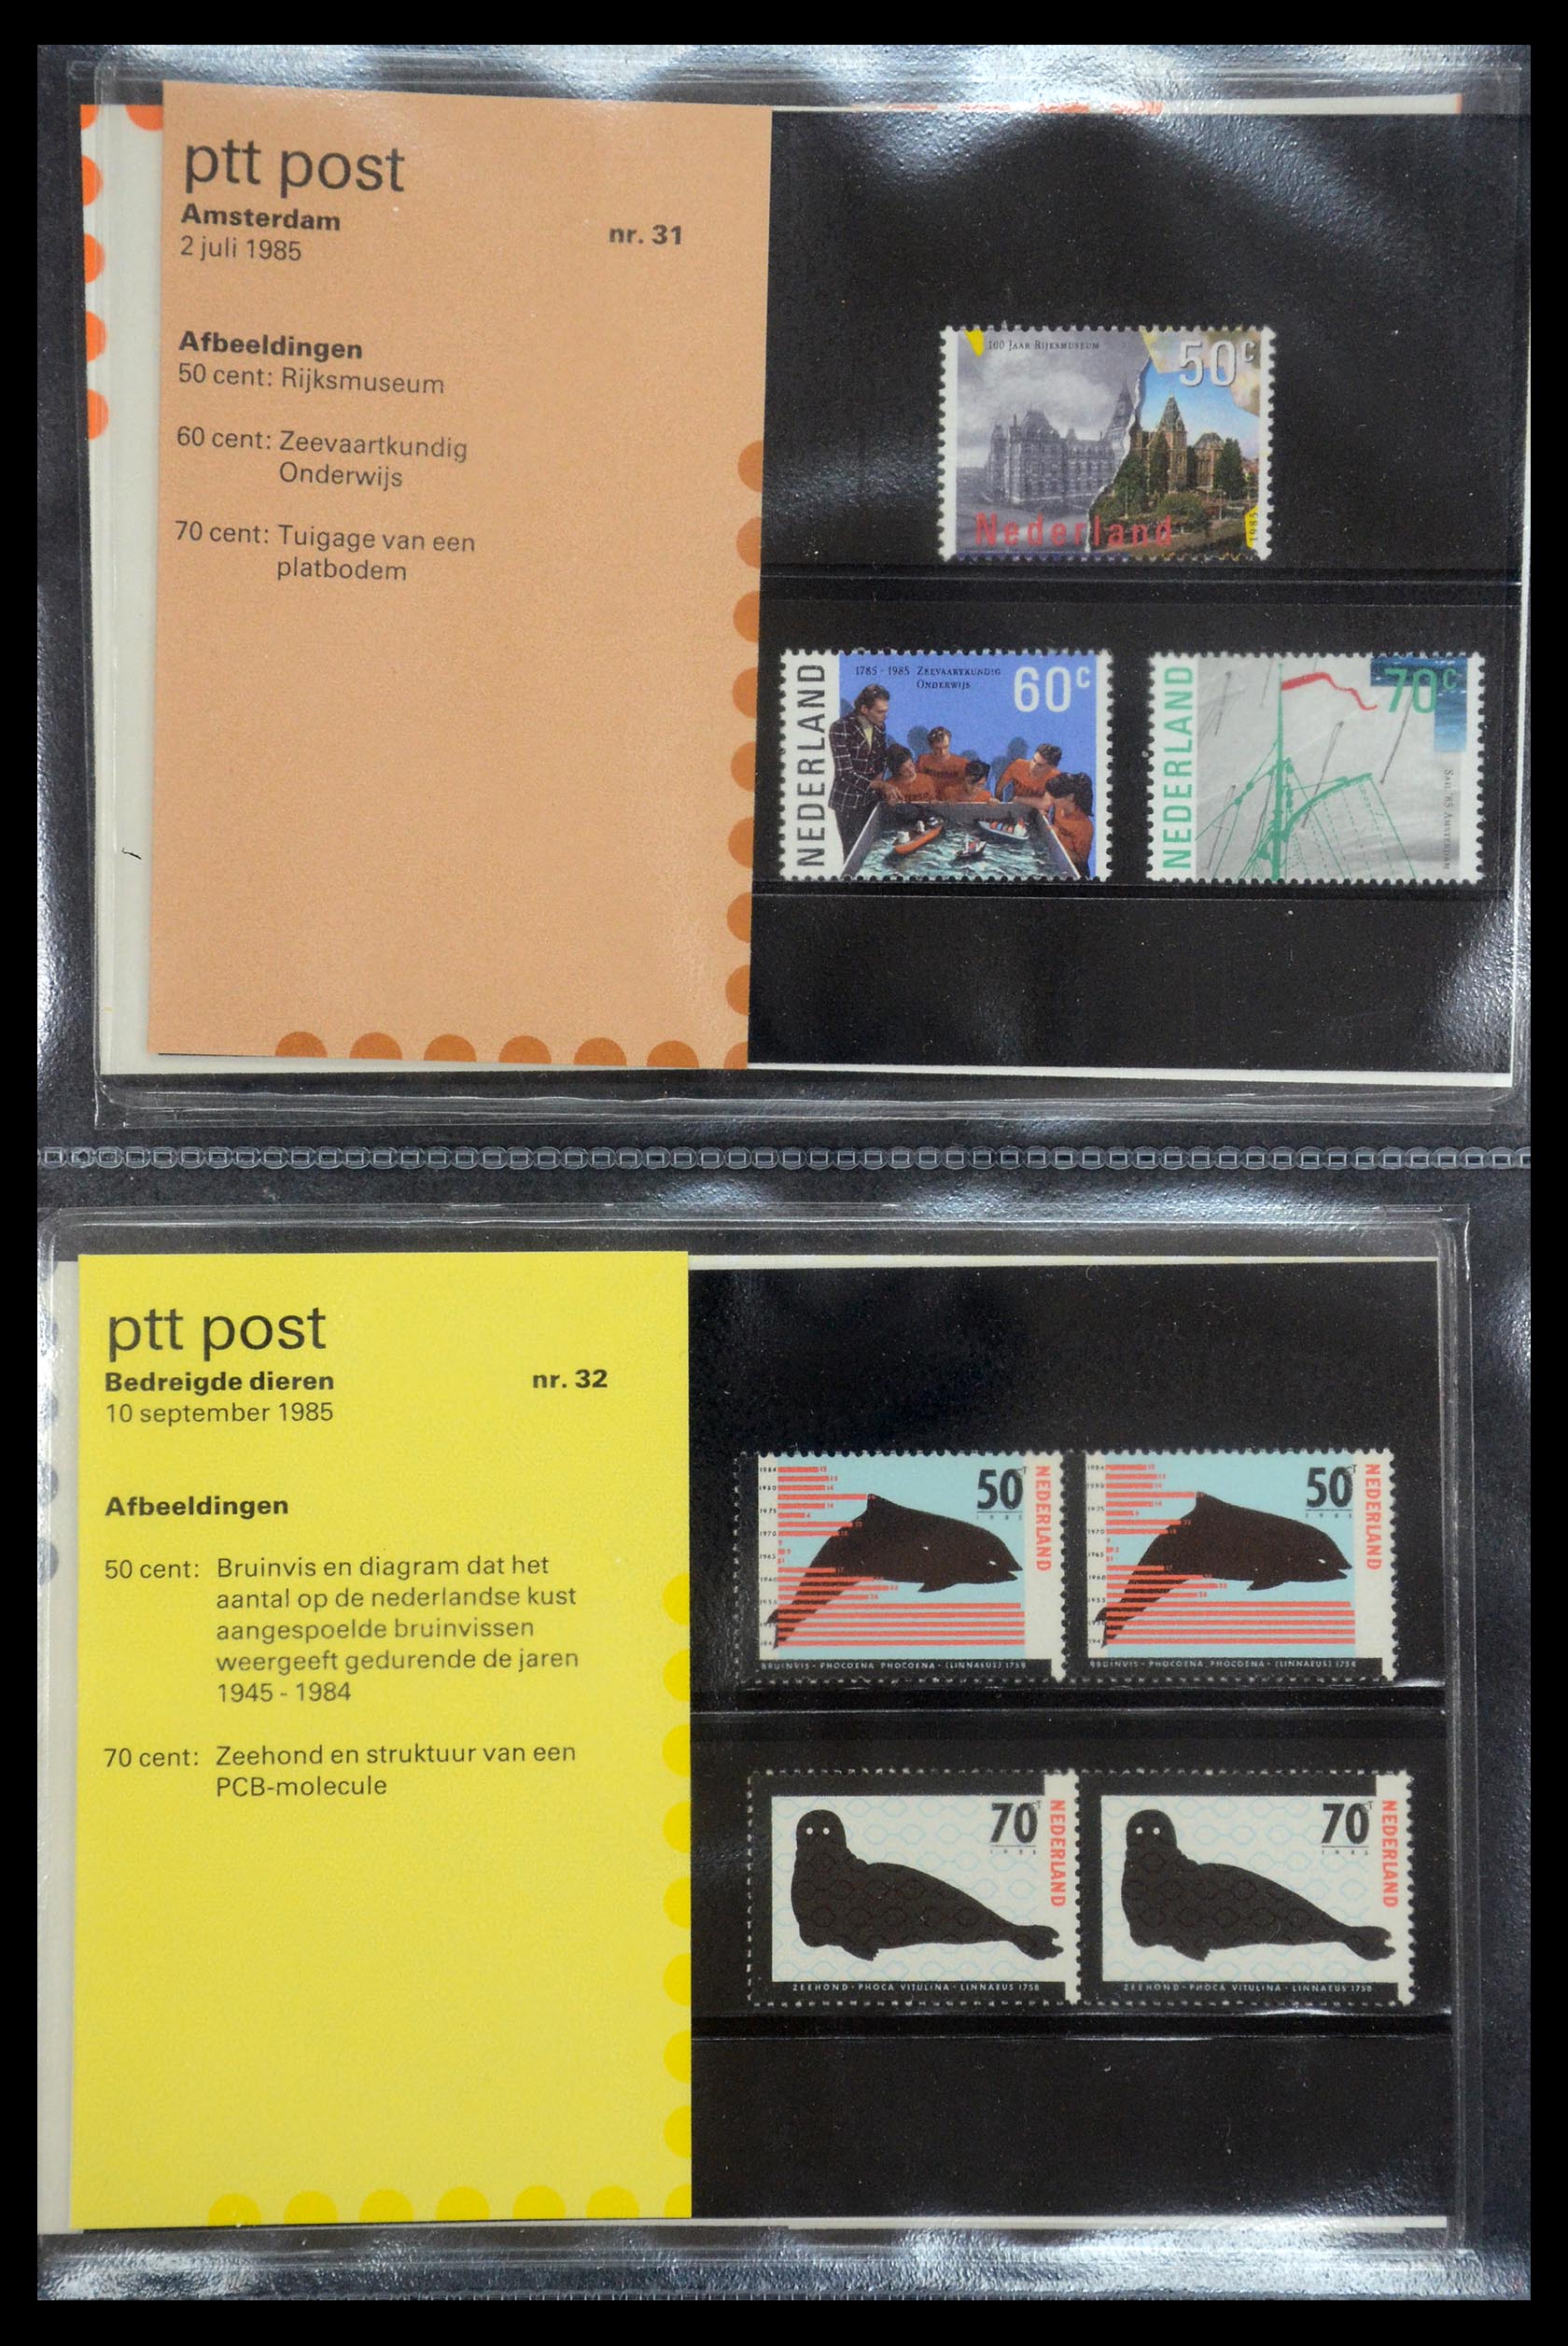 35187 016 - Stamp Collection 35187 Netherlands PTT presentation packs 1982-2019!